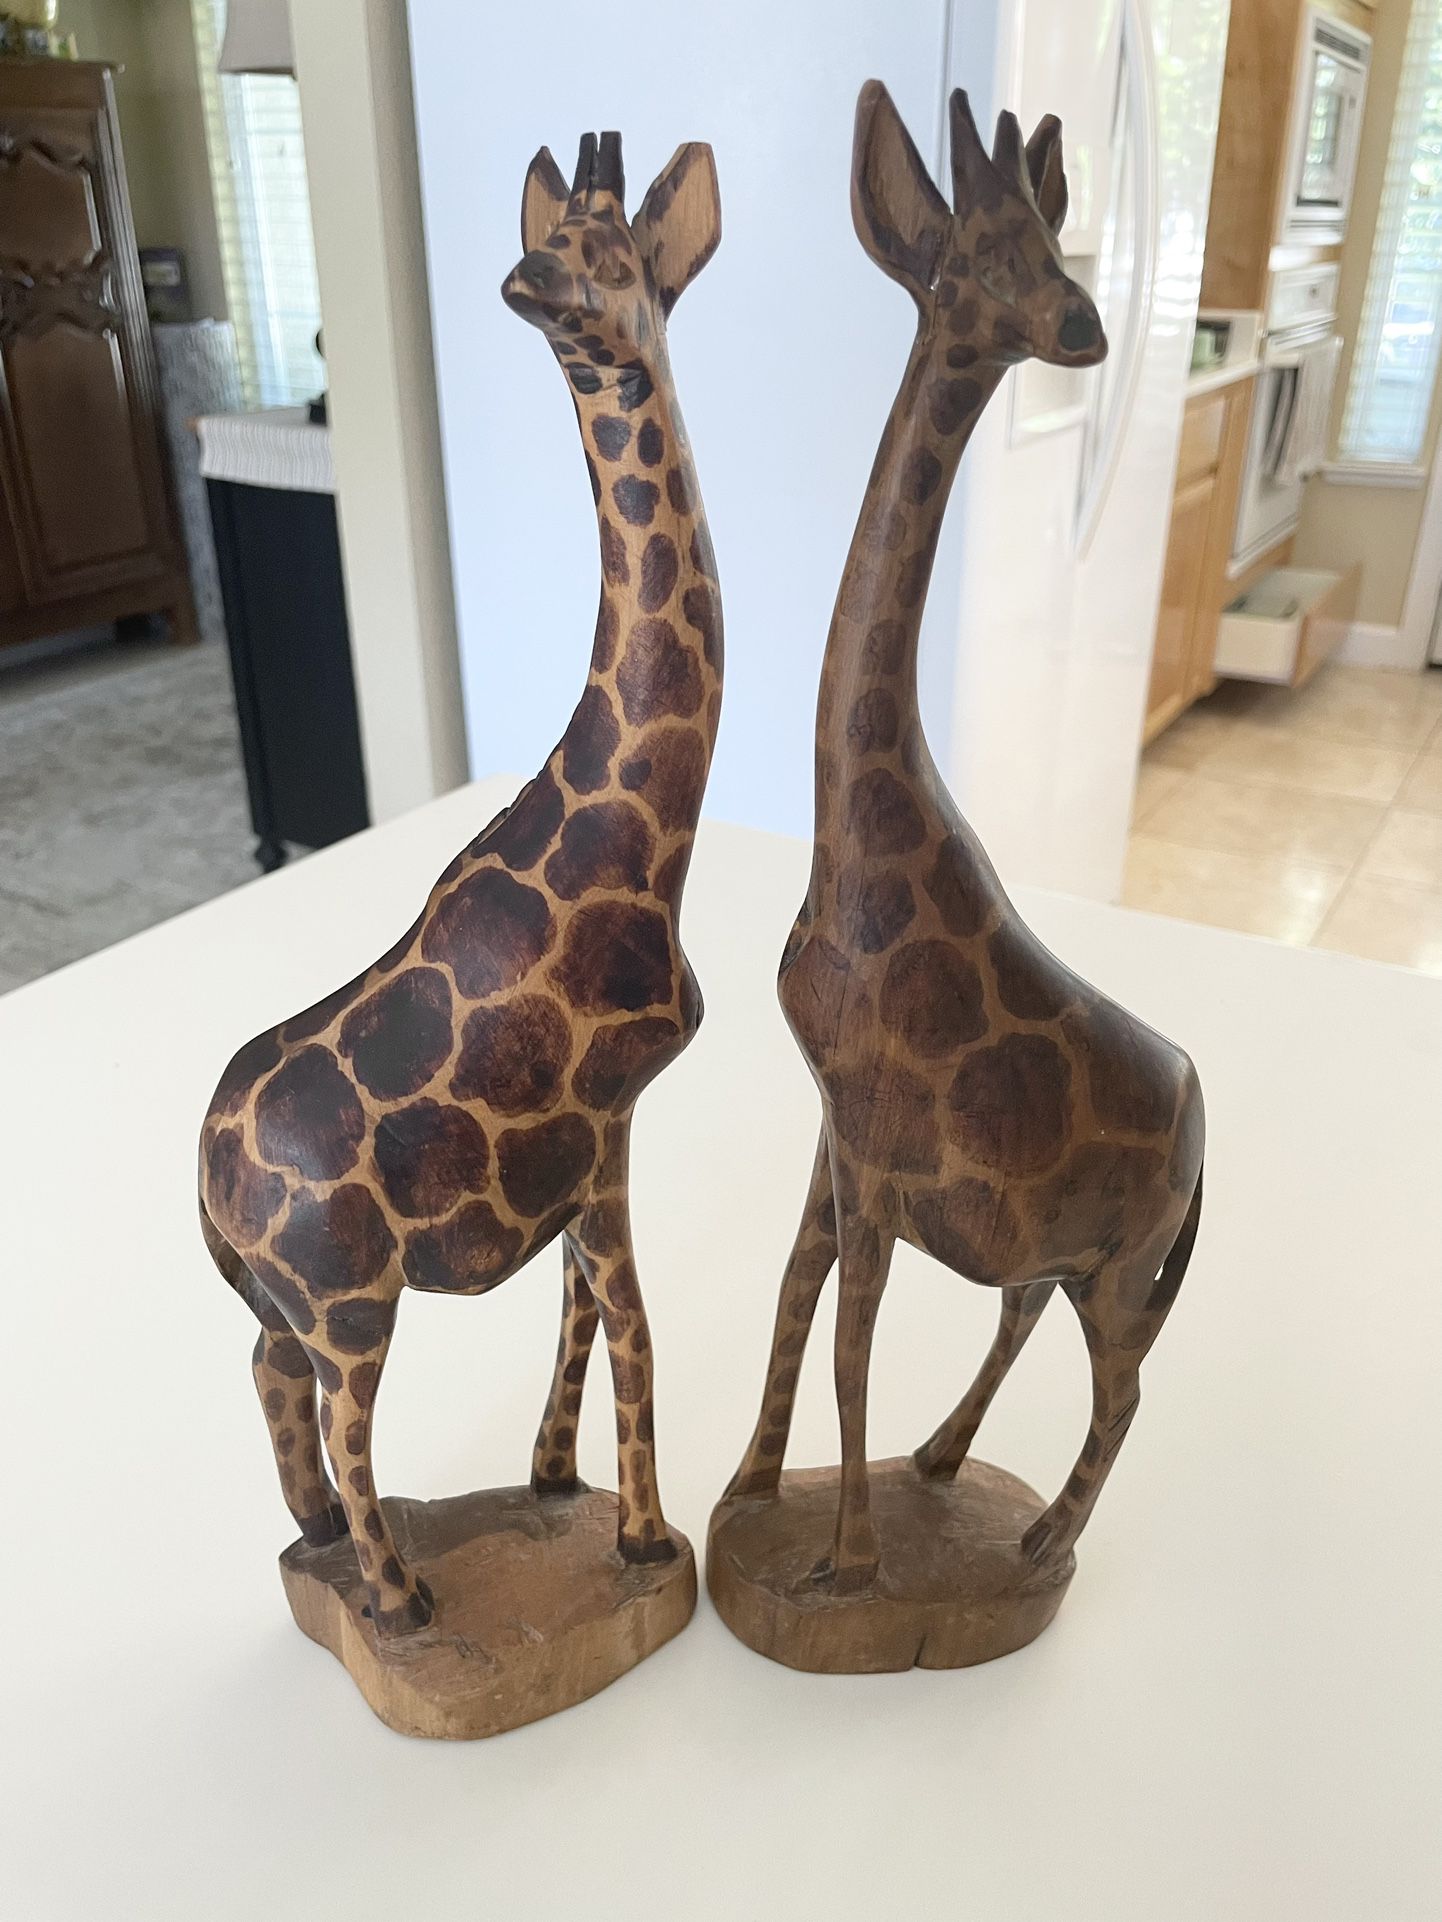 12" Tall Wood Giraffe Pair Hand Carved Wooden Giraffes Set of 2